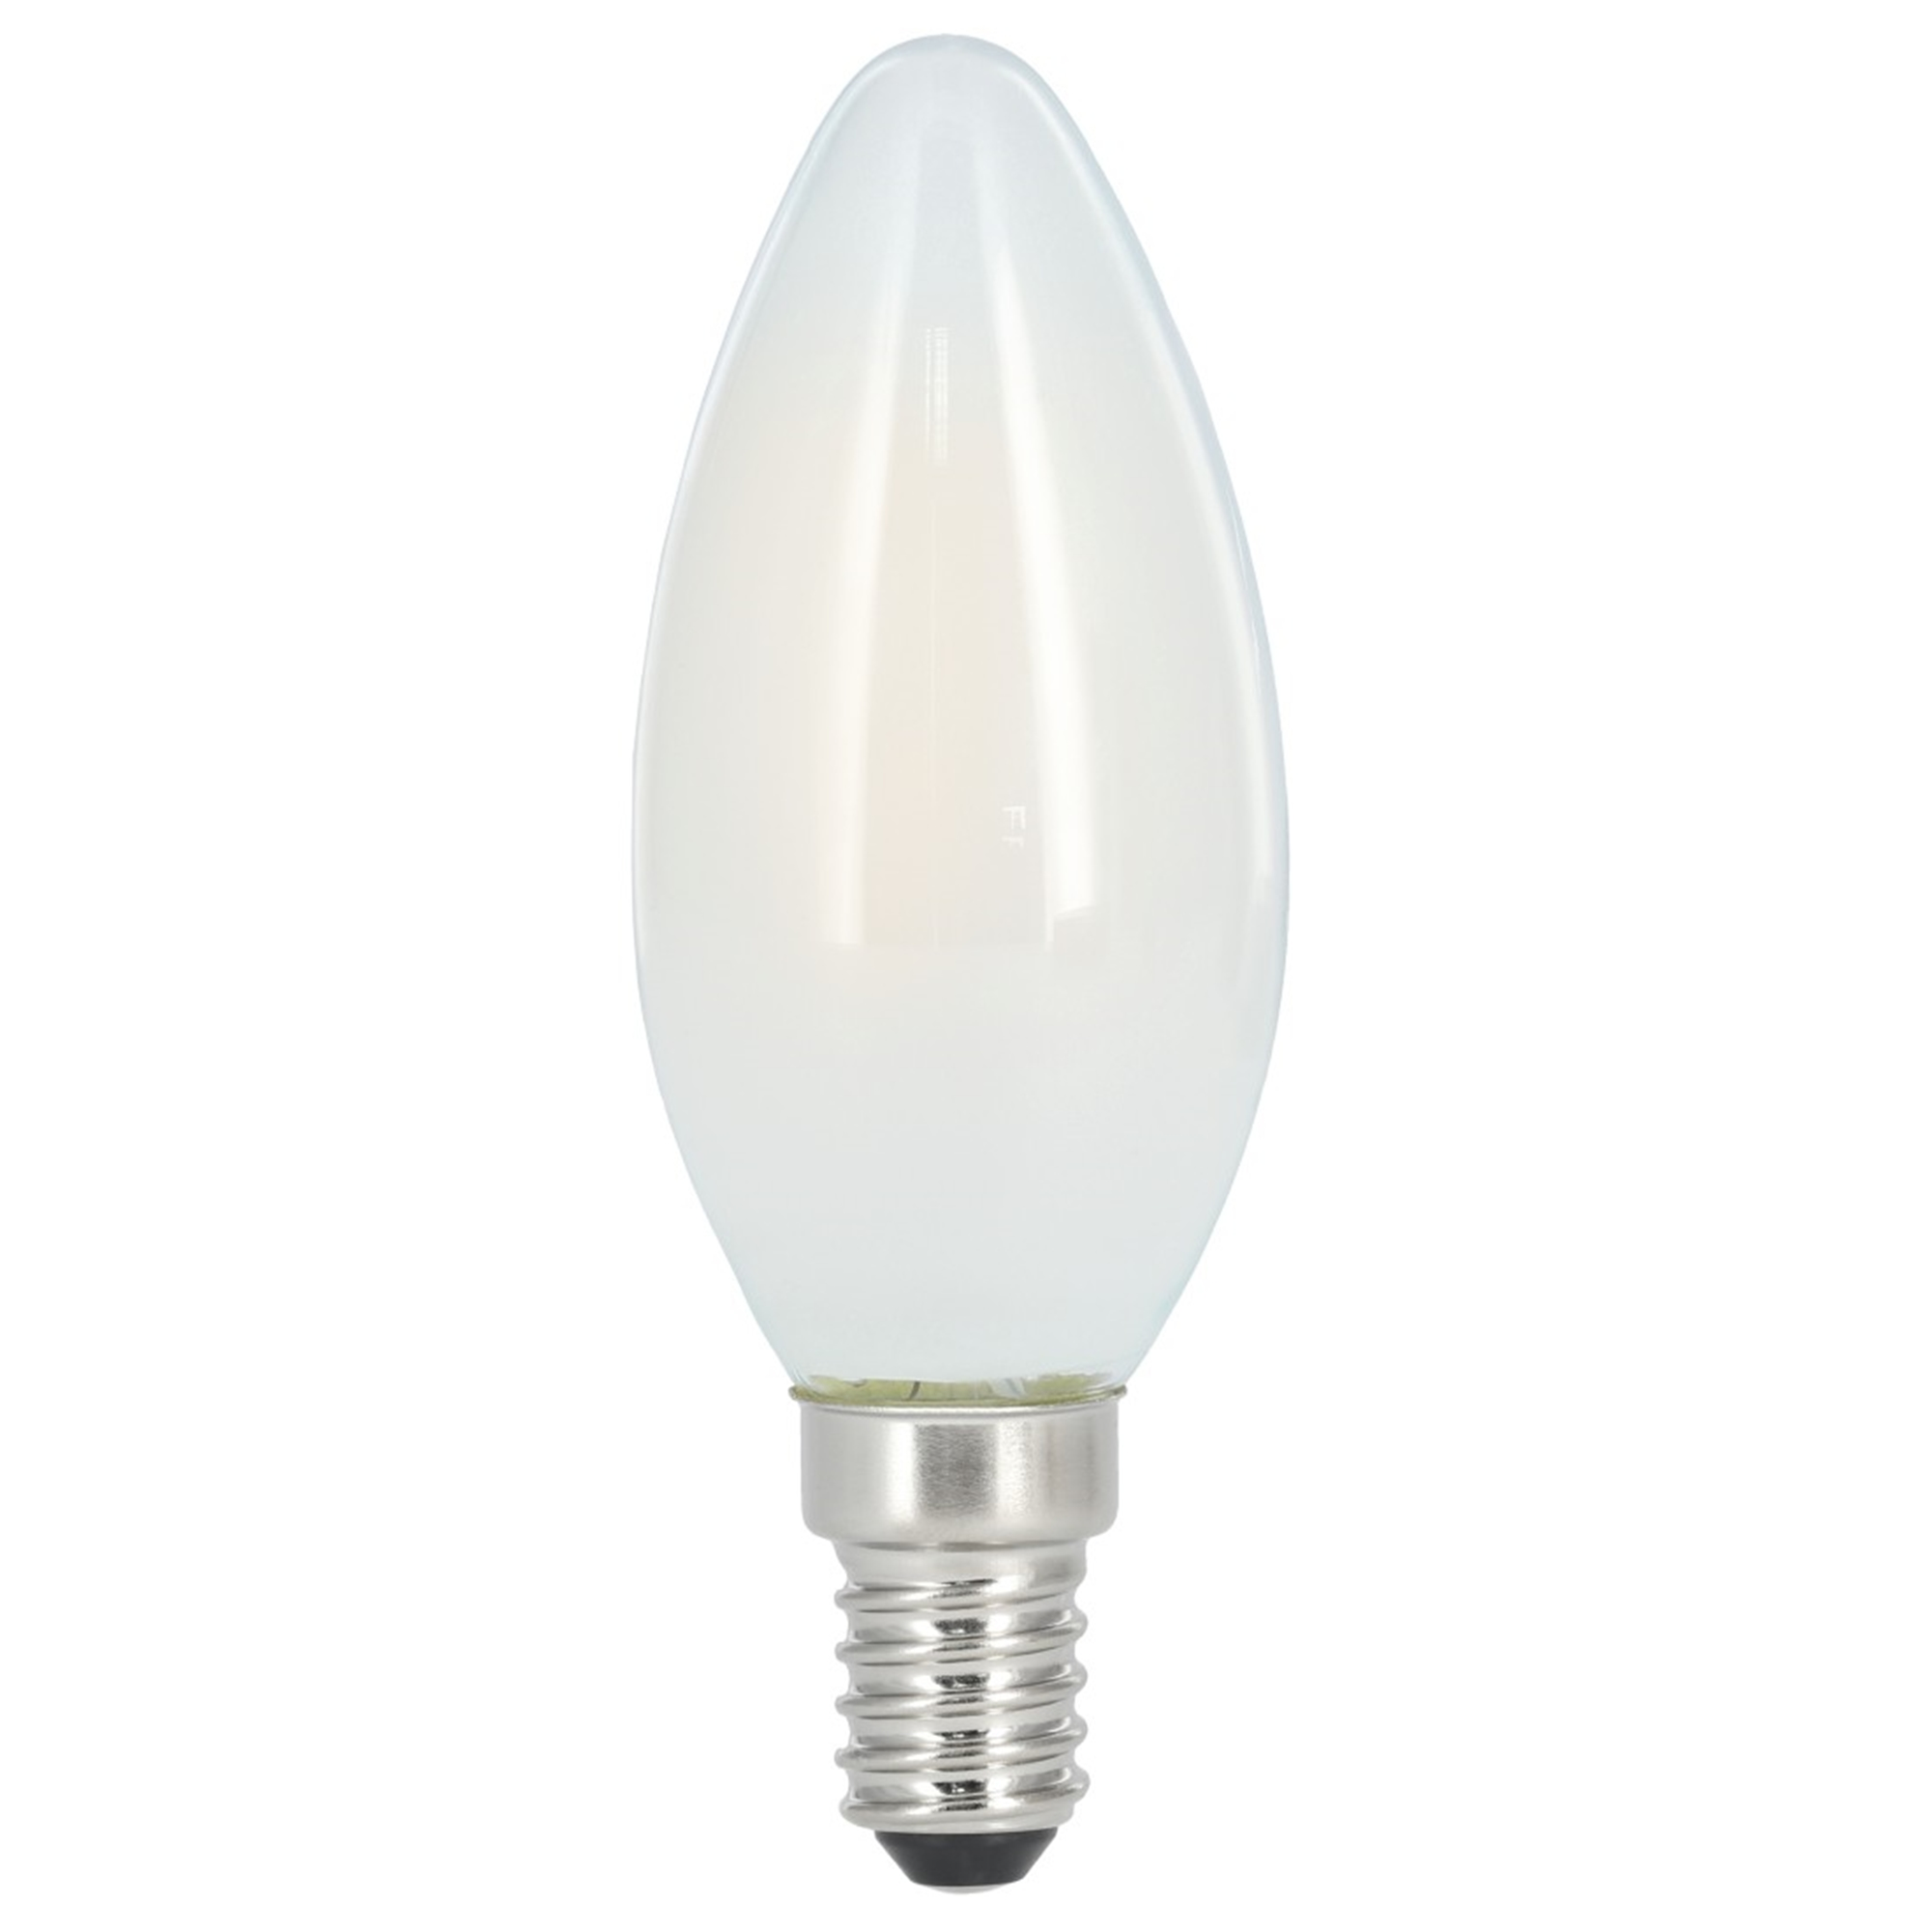 XAVAX E14, 470lm 40W Warmweiß E14 LED-Lampe ersetzt